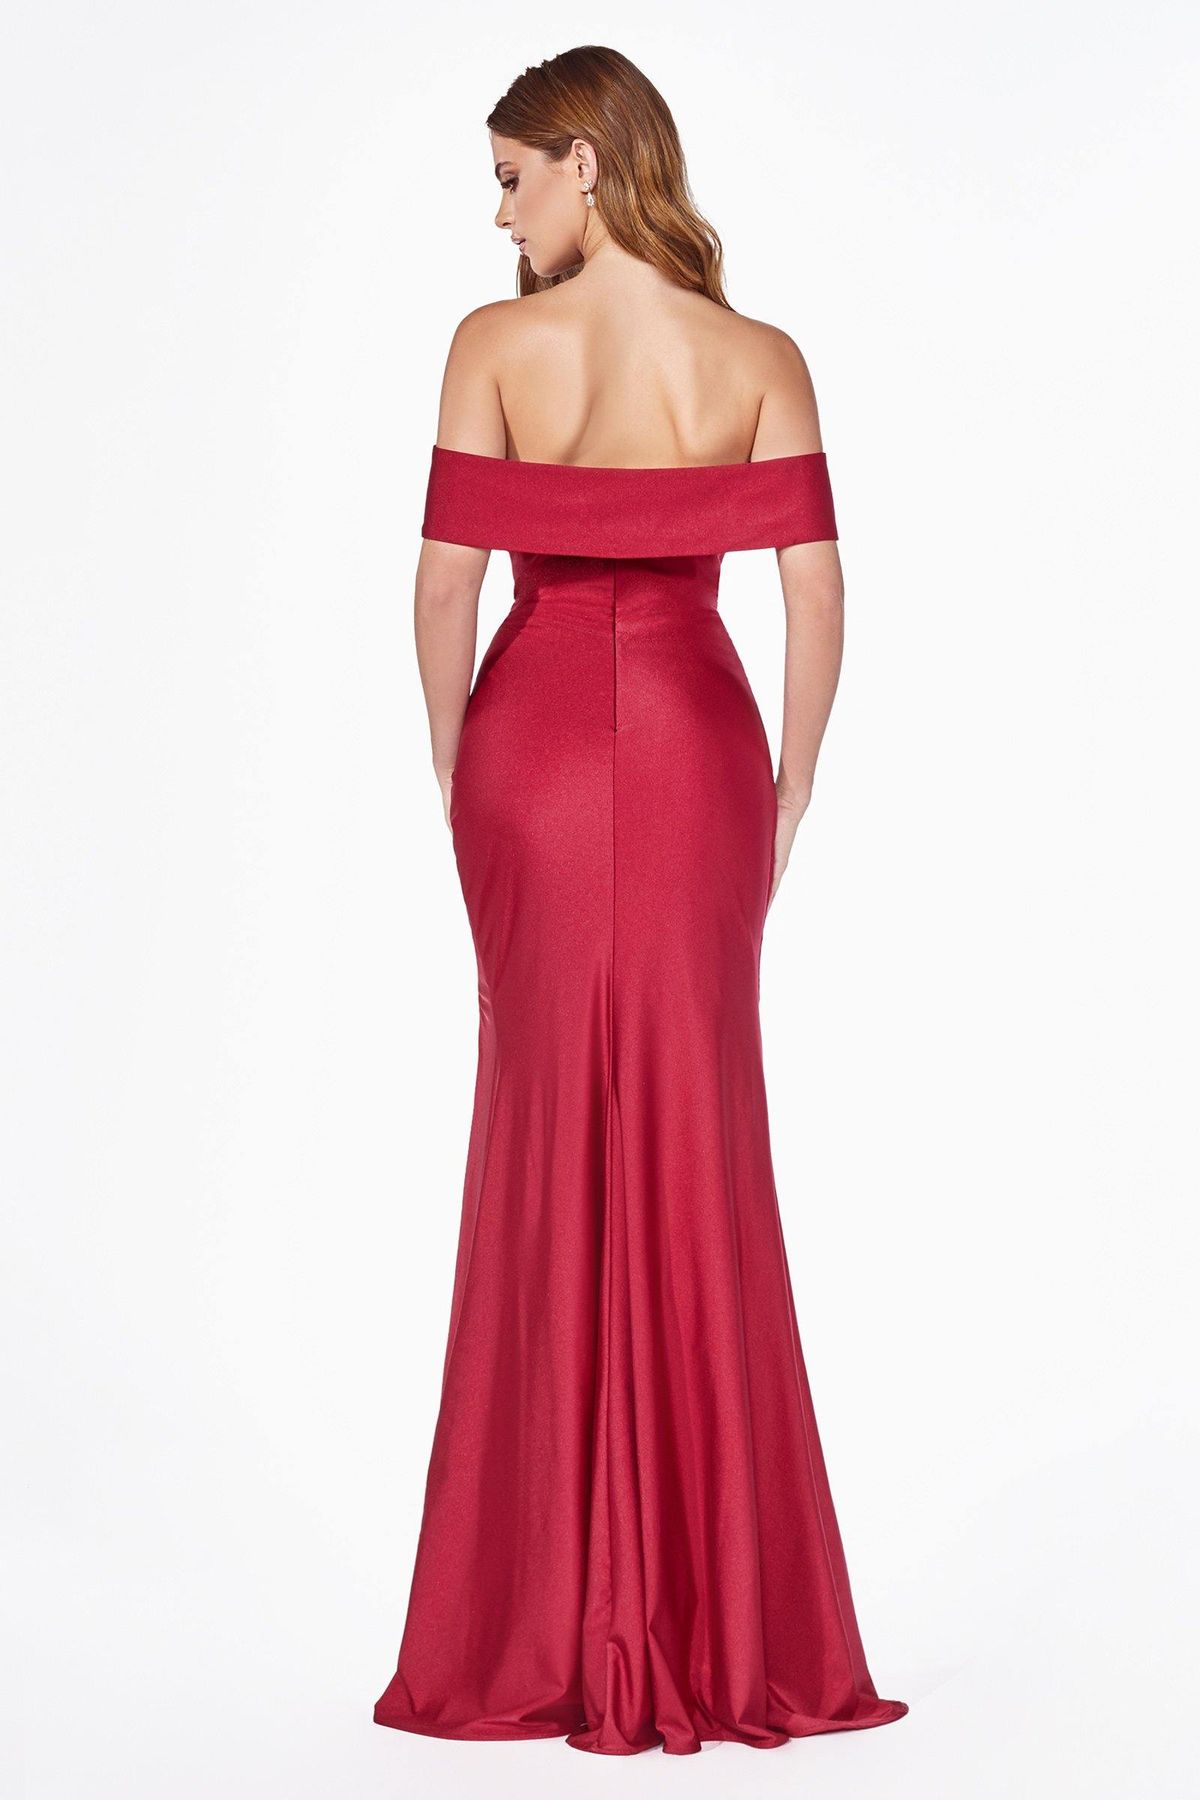 Style CDKV1050 Cinderella Divine Plus Size 20 Off The Shoulder Red Side Slit Dress on Queenly